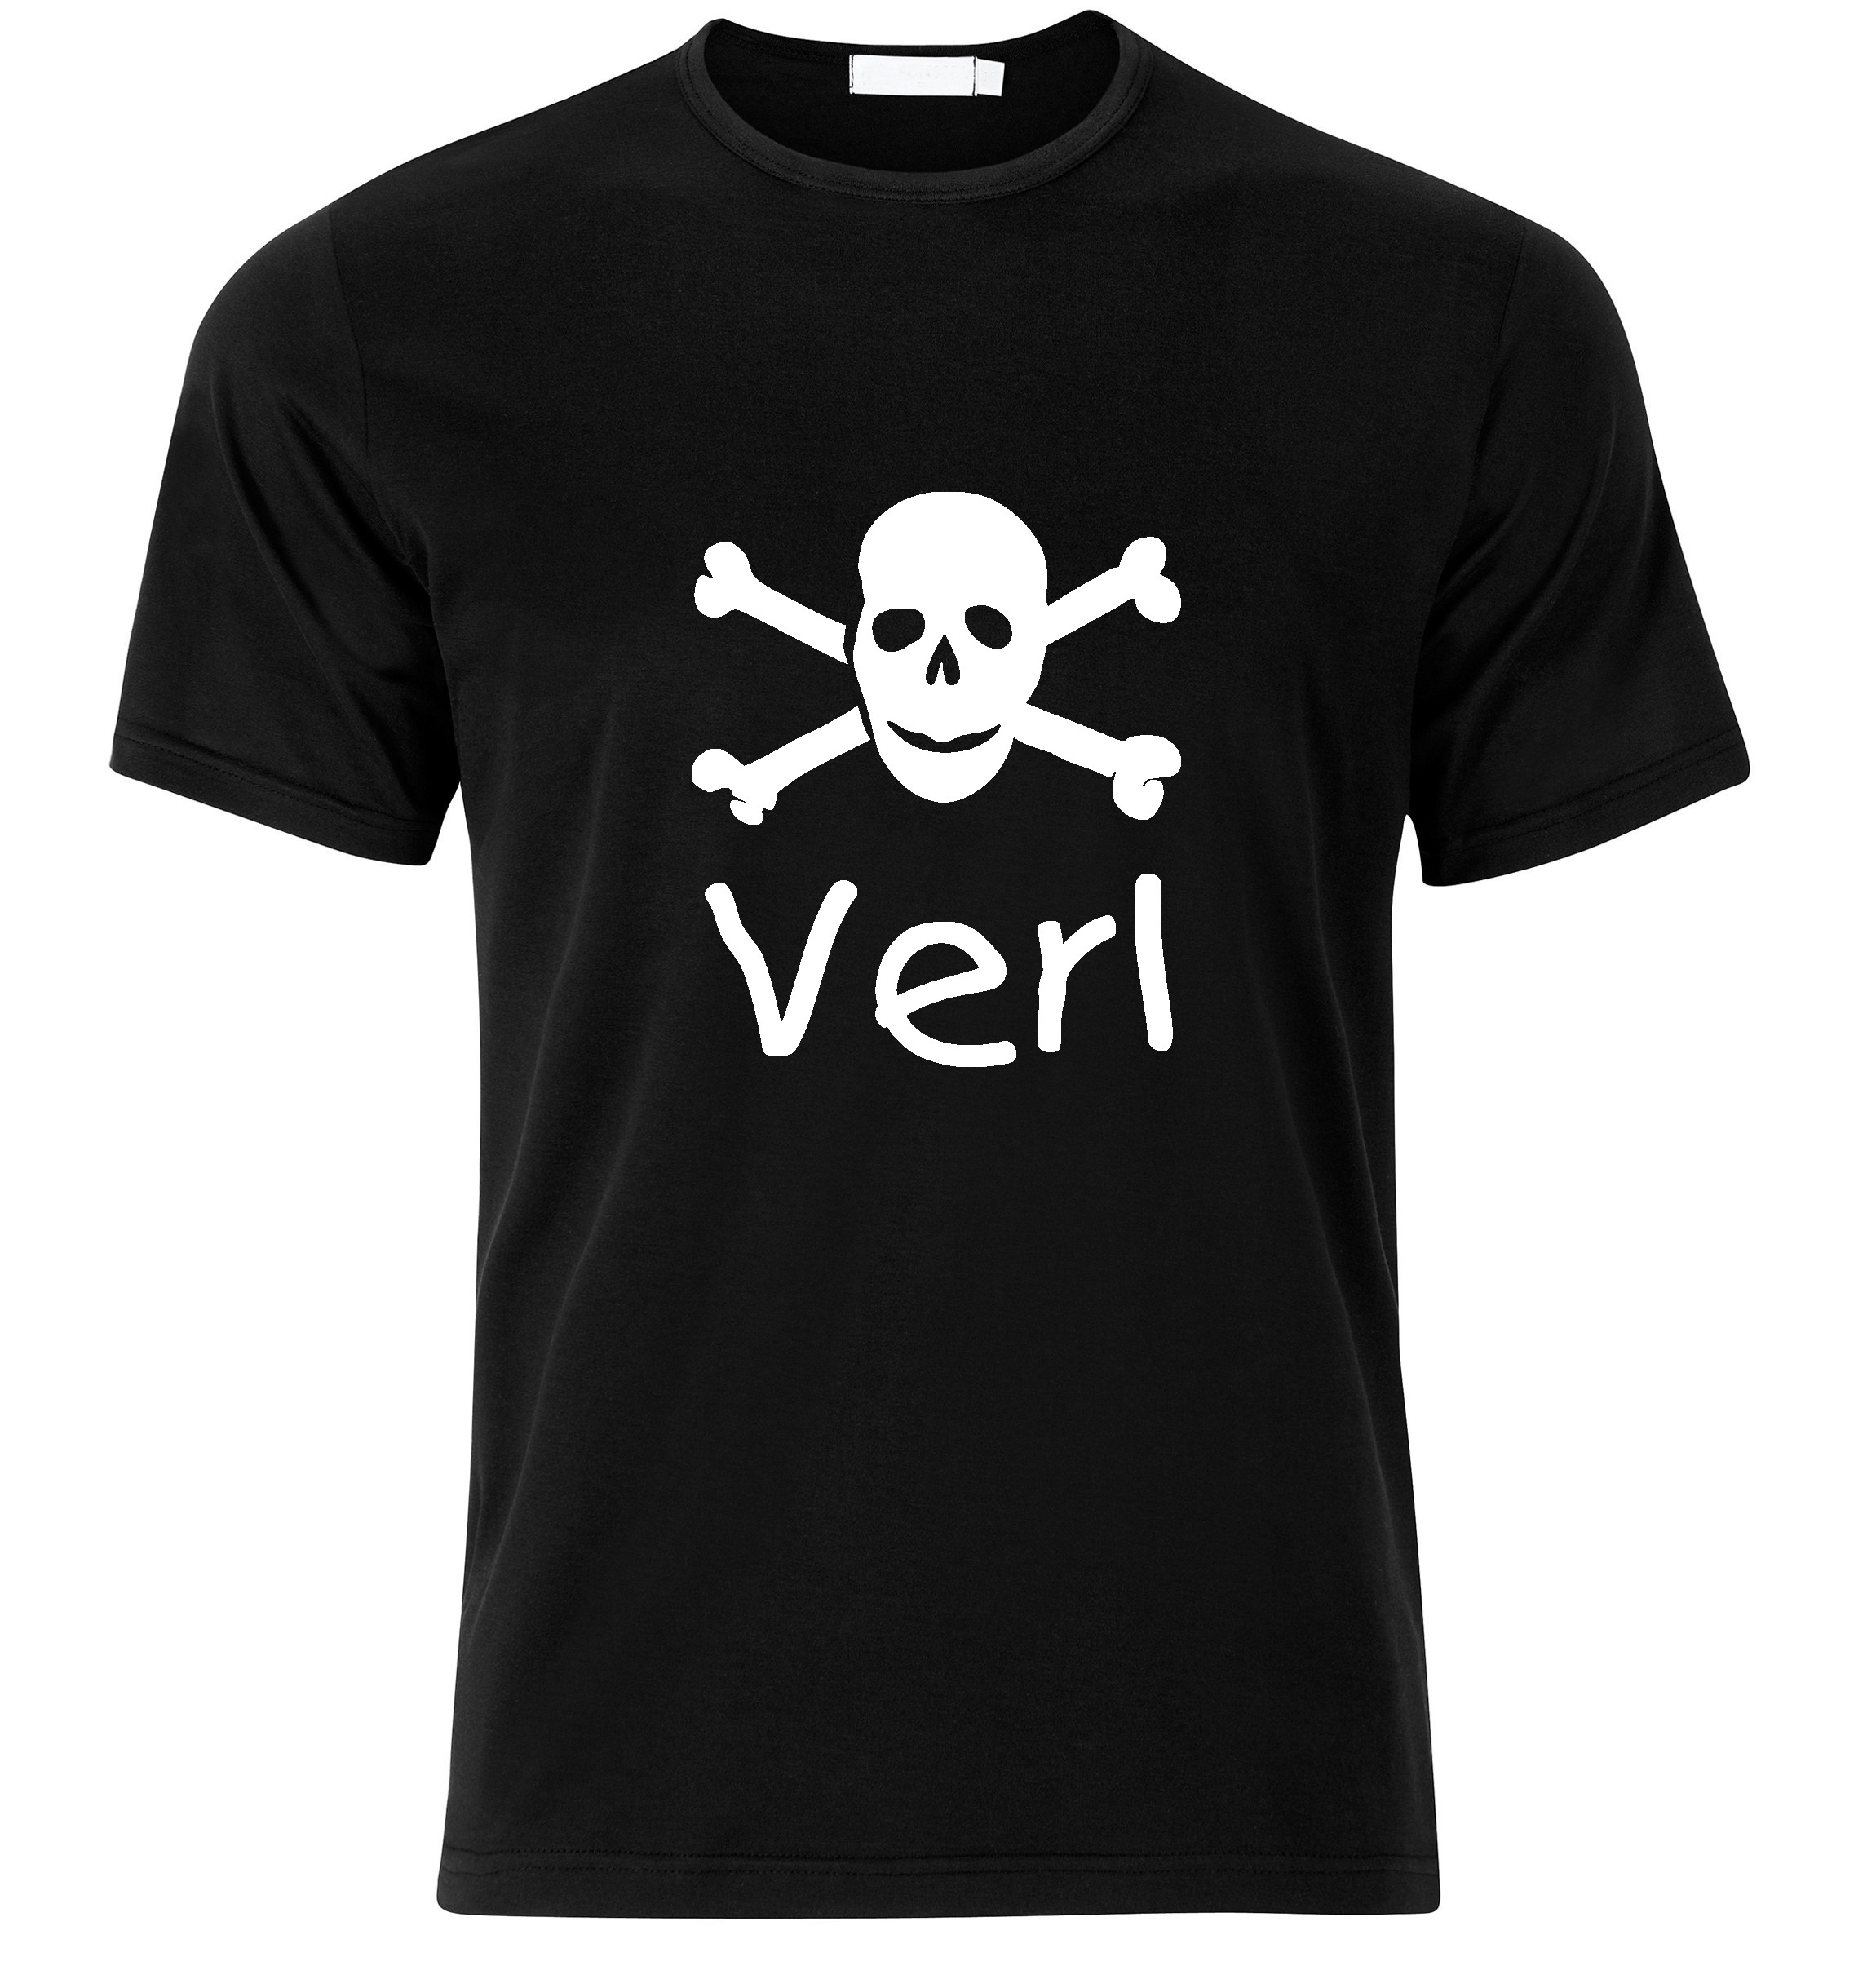 T-Shirt Verl Jolly Roger, Totenkopf